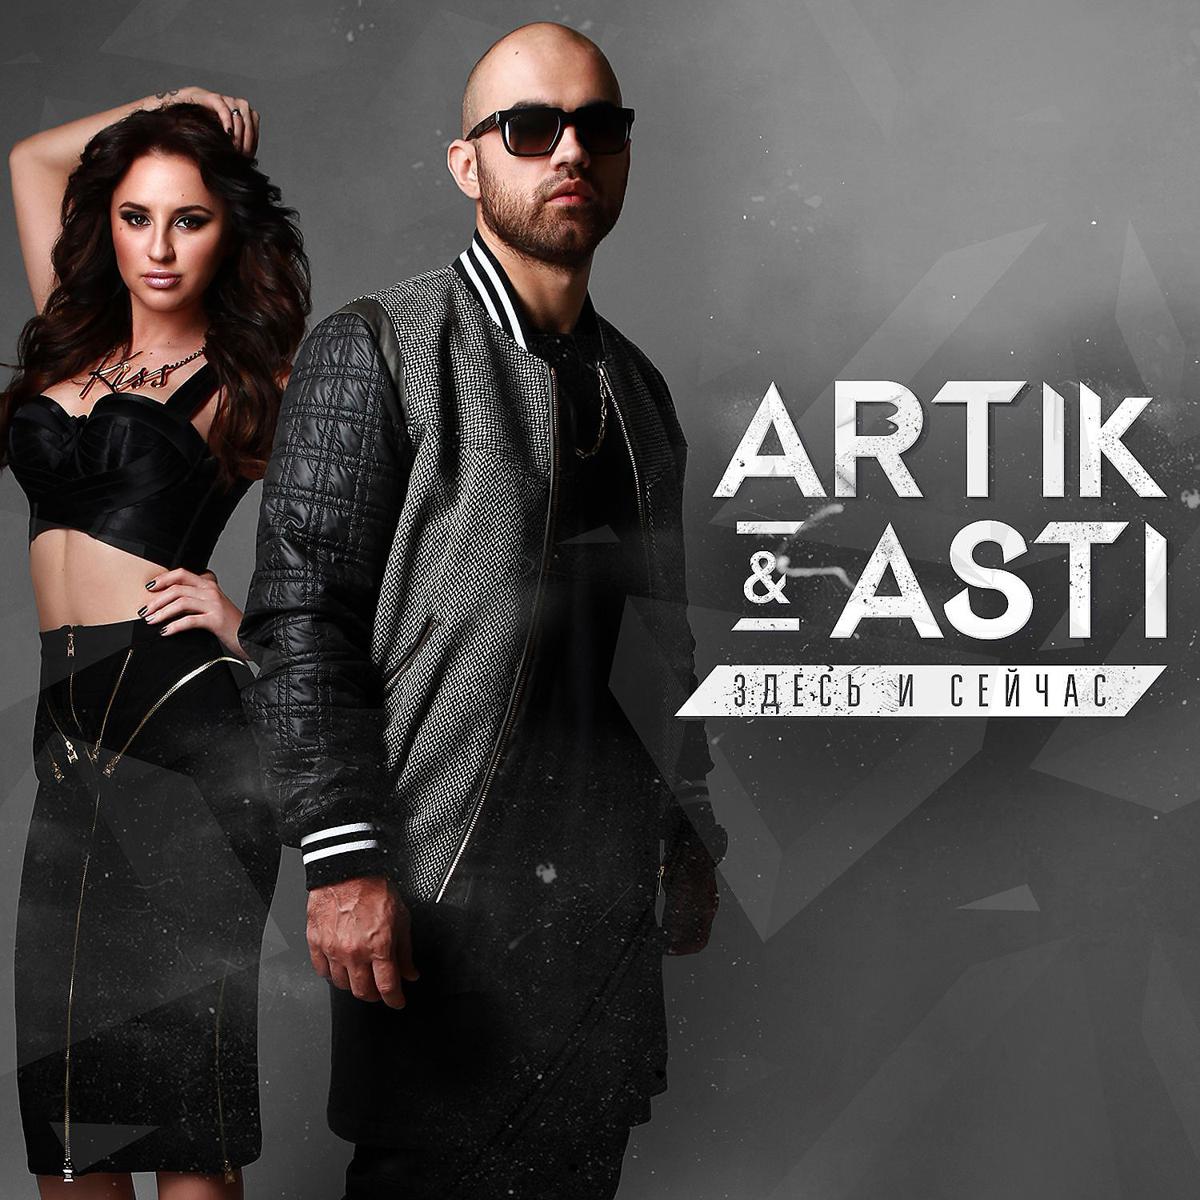 Остаться новая песня. Артик и Асти. Artik Asti здесь и сейчас 2015. Artik Asti обложка. Артик и Асти 2014.